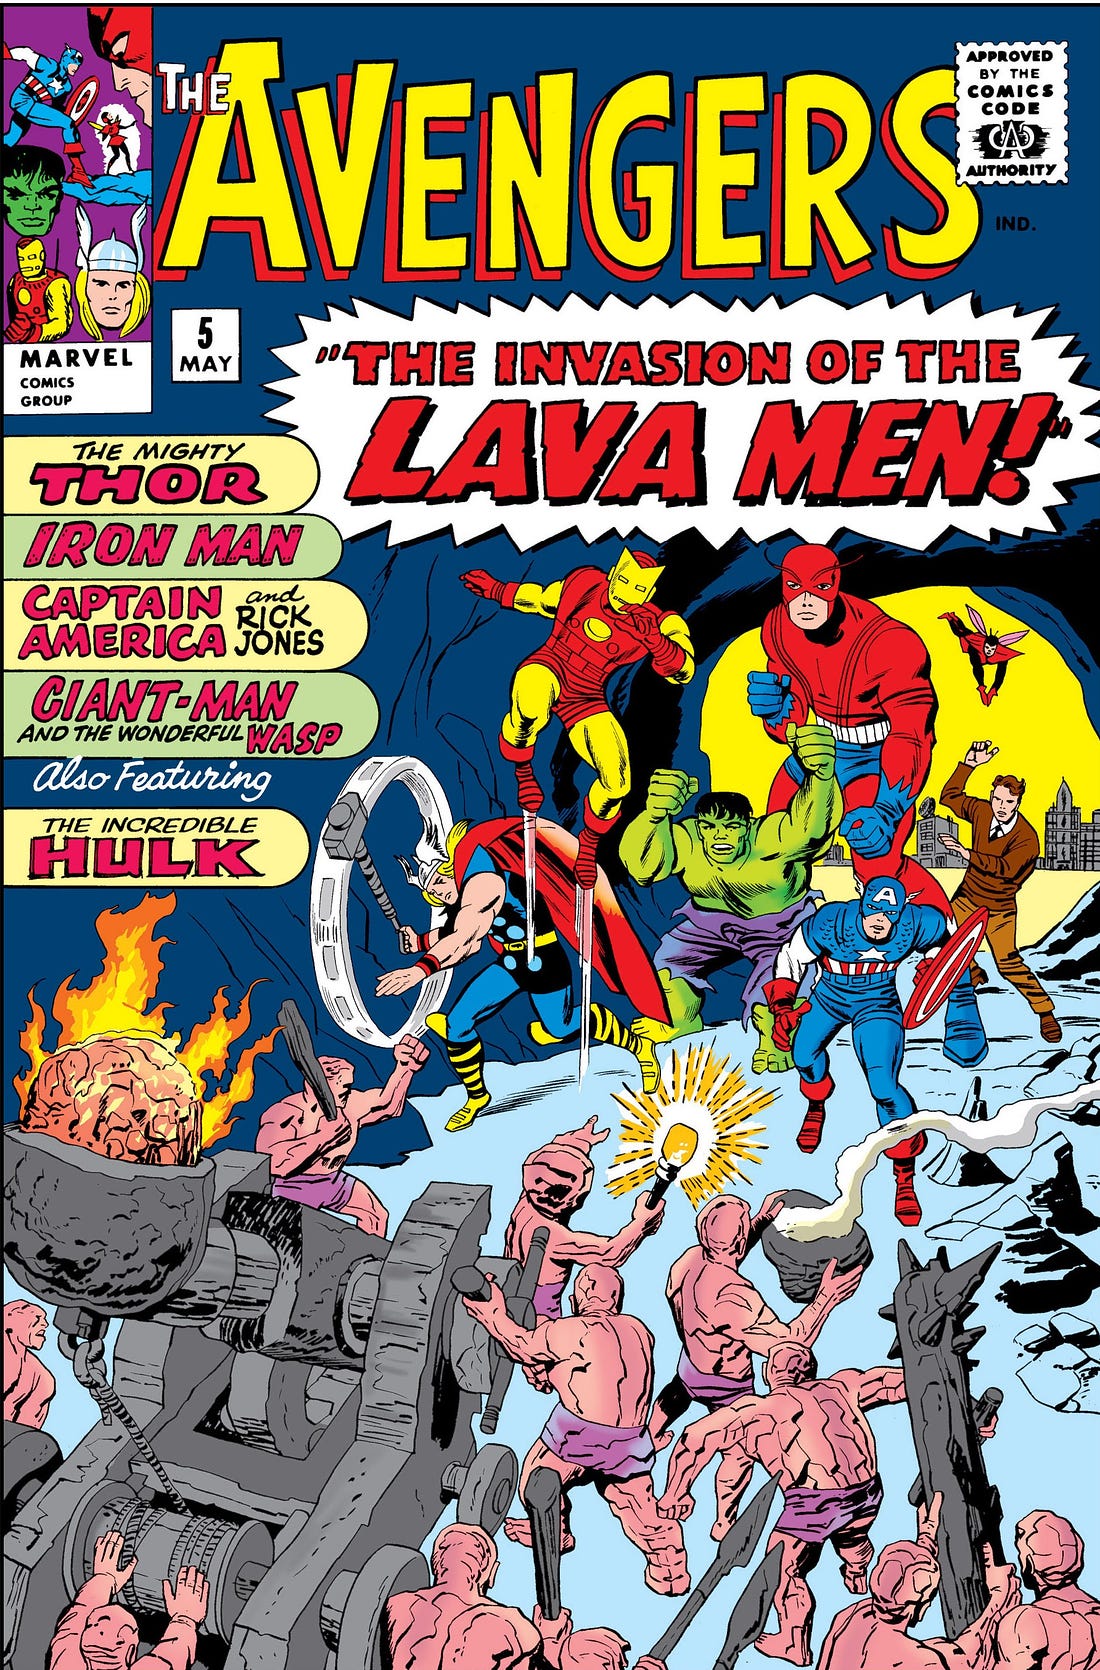 Avengers Vol 1 5 | Marvel Database | Fandom